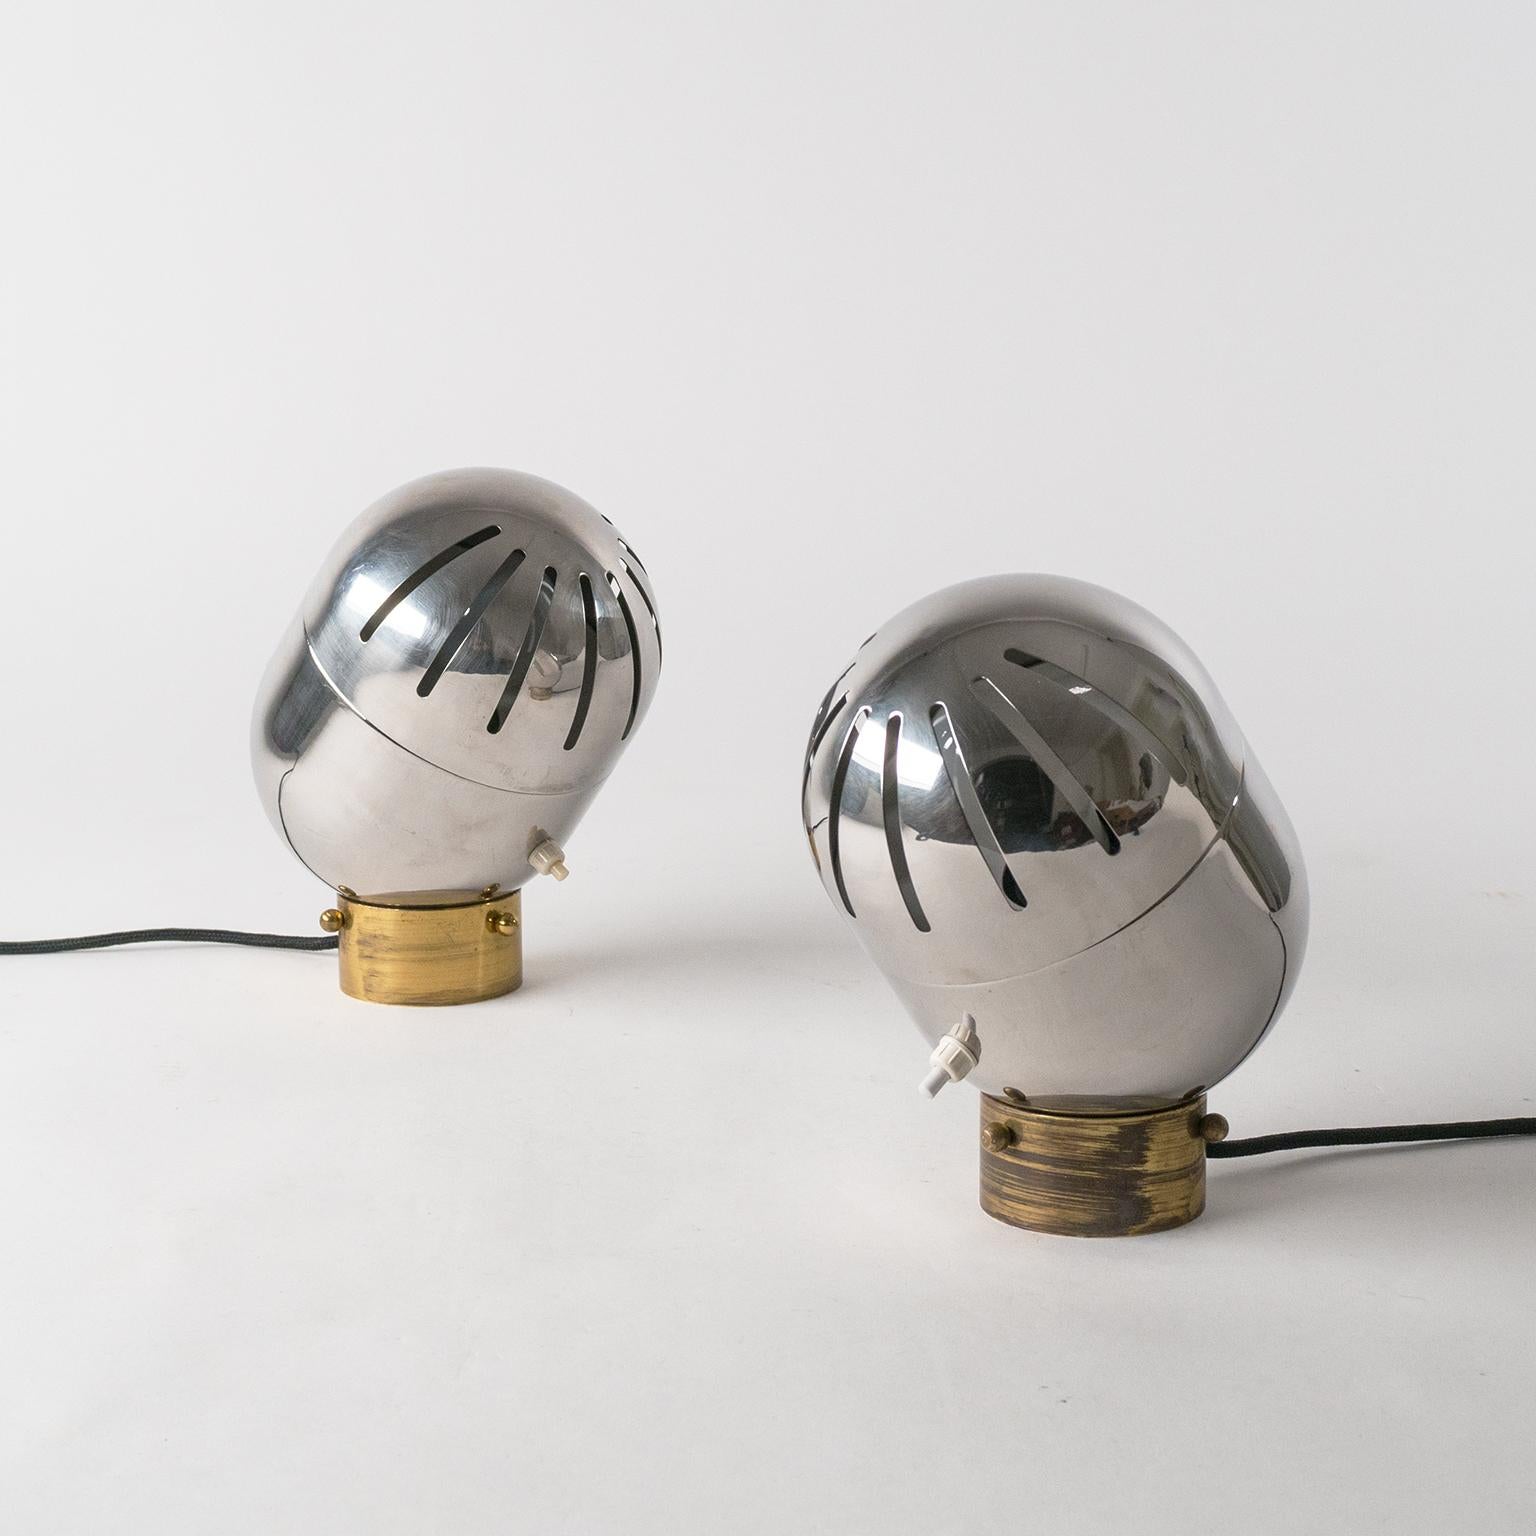 Rare paire de lampes de table italiennes chromées par Reggiani, années 1960. Design très sculptural avec un corps entièrement chromé et des fentes discrètes sur le couvercle supérieur (qui peut être tourné à 360 degrés) qui permettent à la lumière